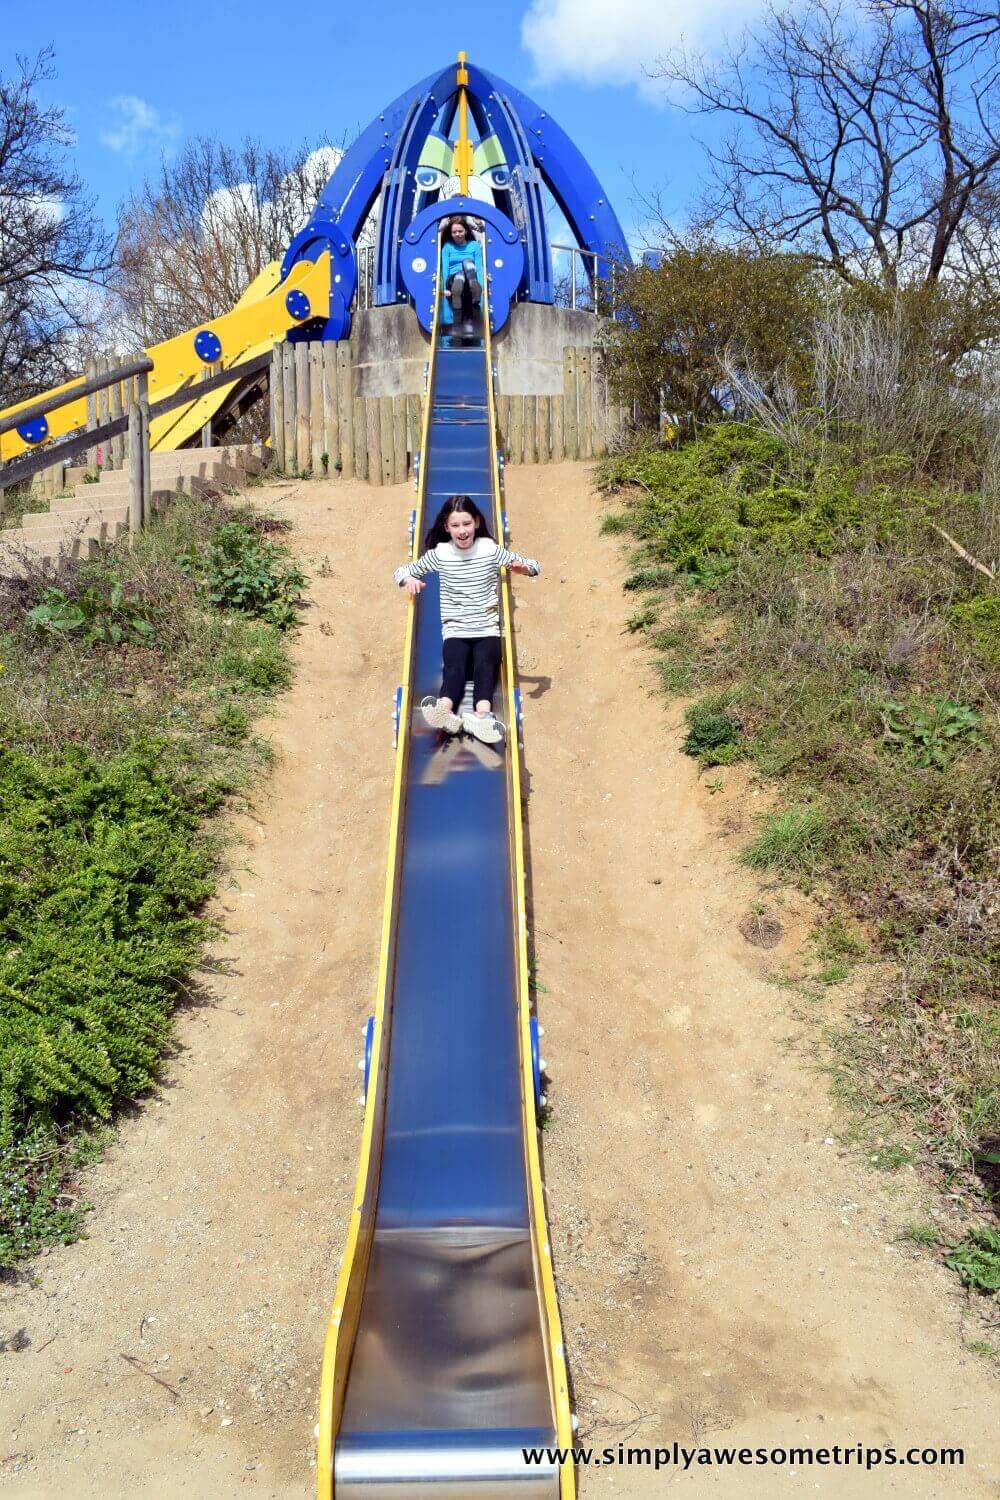 The super slide at Parc de Floral